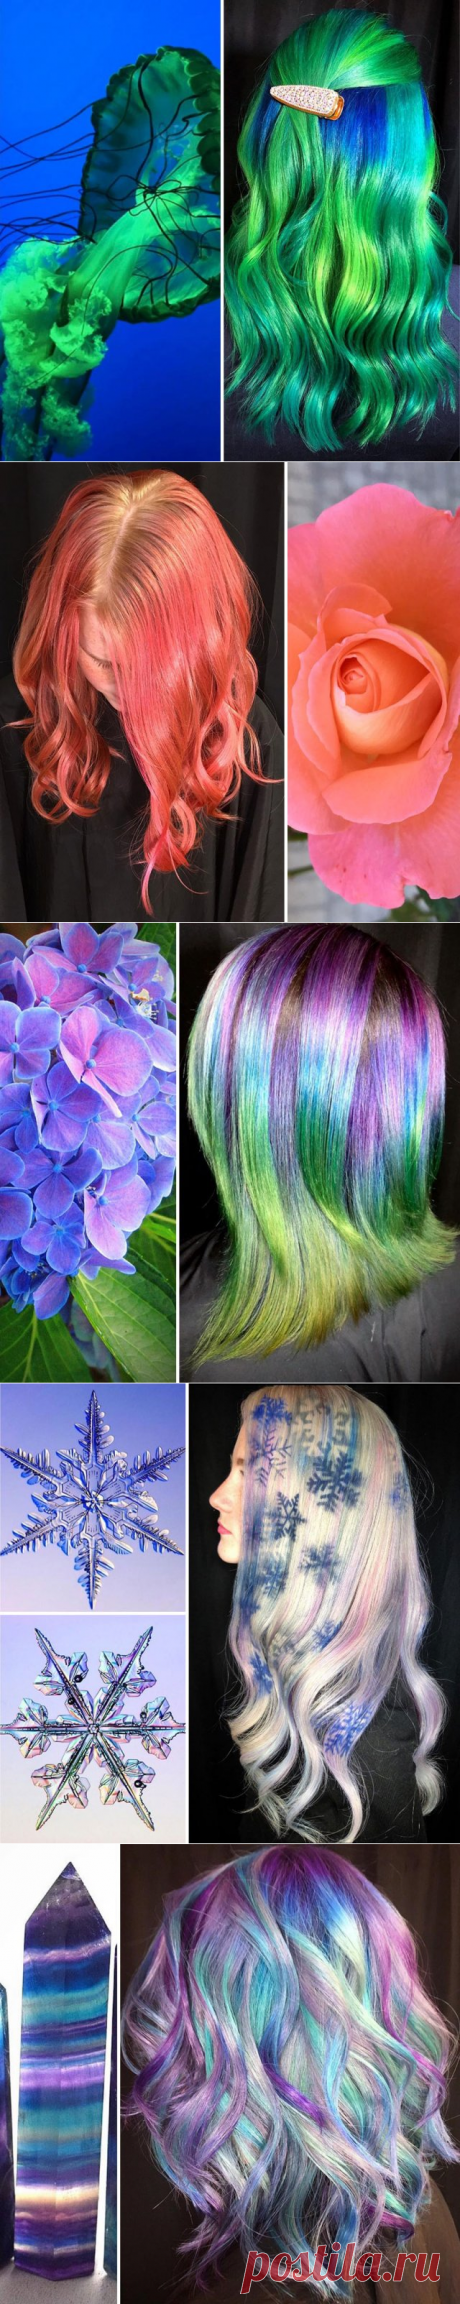 Парикмахер окрашивает волосы своих клиенток, вдохновляясь красками природы